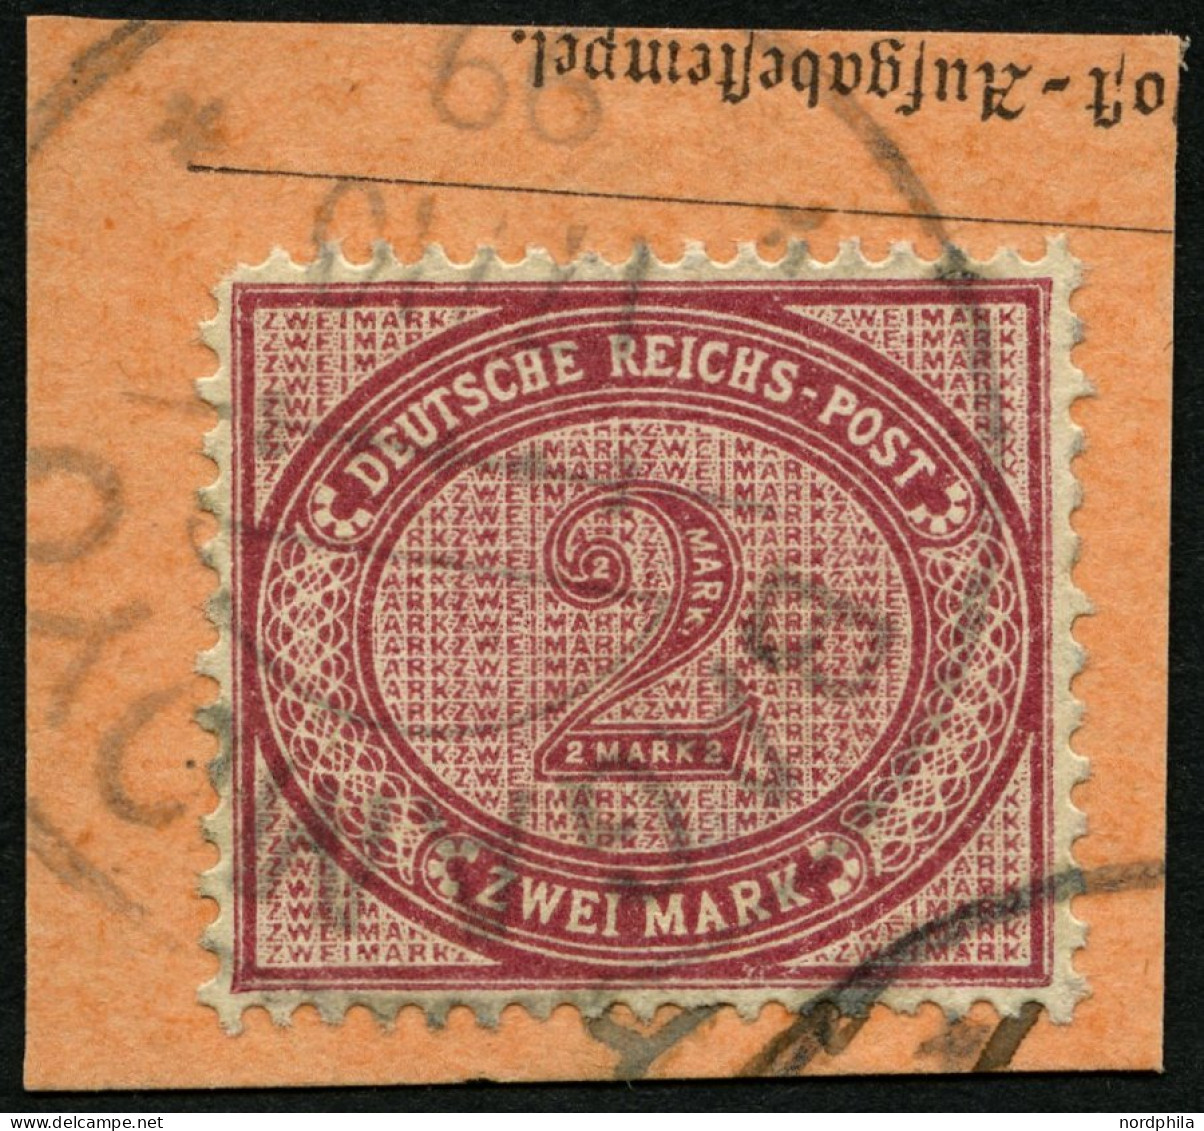 DEUTSCH-OSTAFRIKA VO 37e BrfStk, 1899, 2 M. Dunkelrotkarmin Auf Postabschnitt Mit Stempel BAGAMOYO, Stumpfer Eckzahn Son - Afrique Orientale